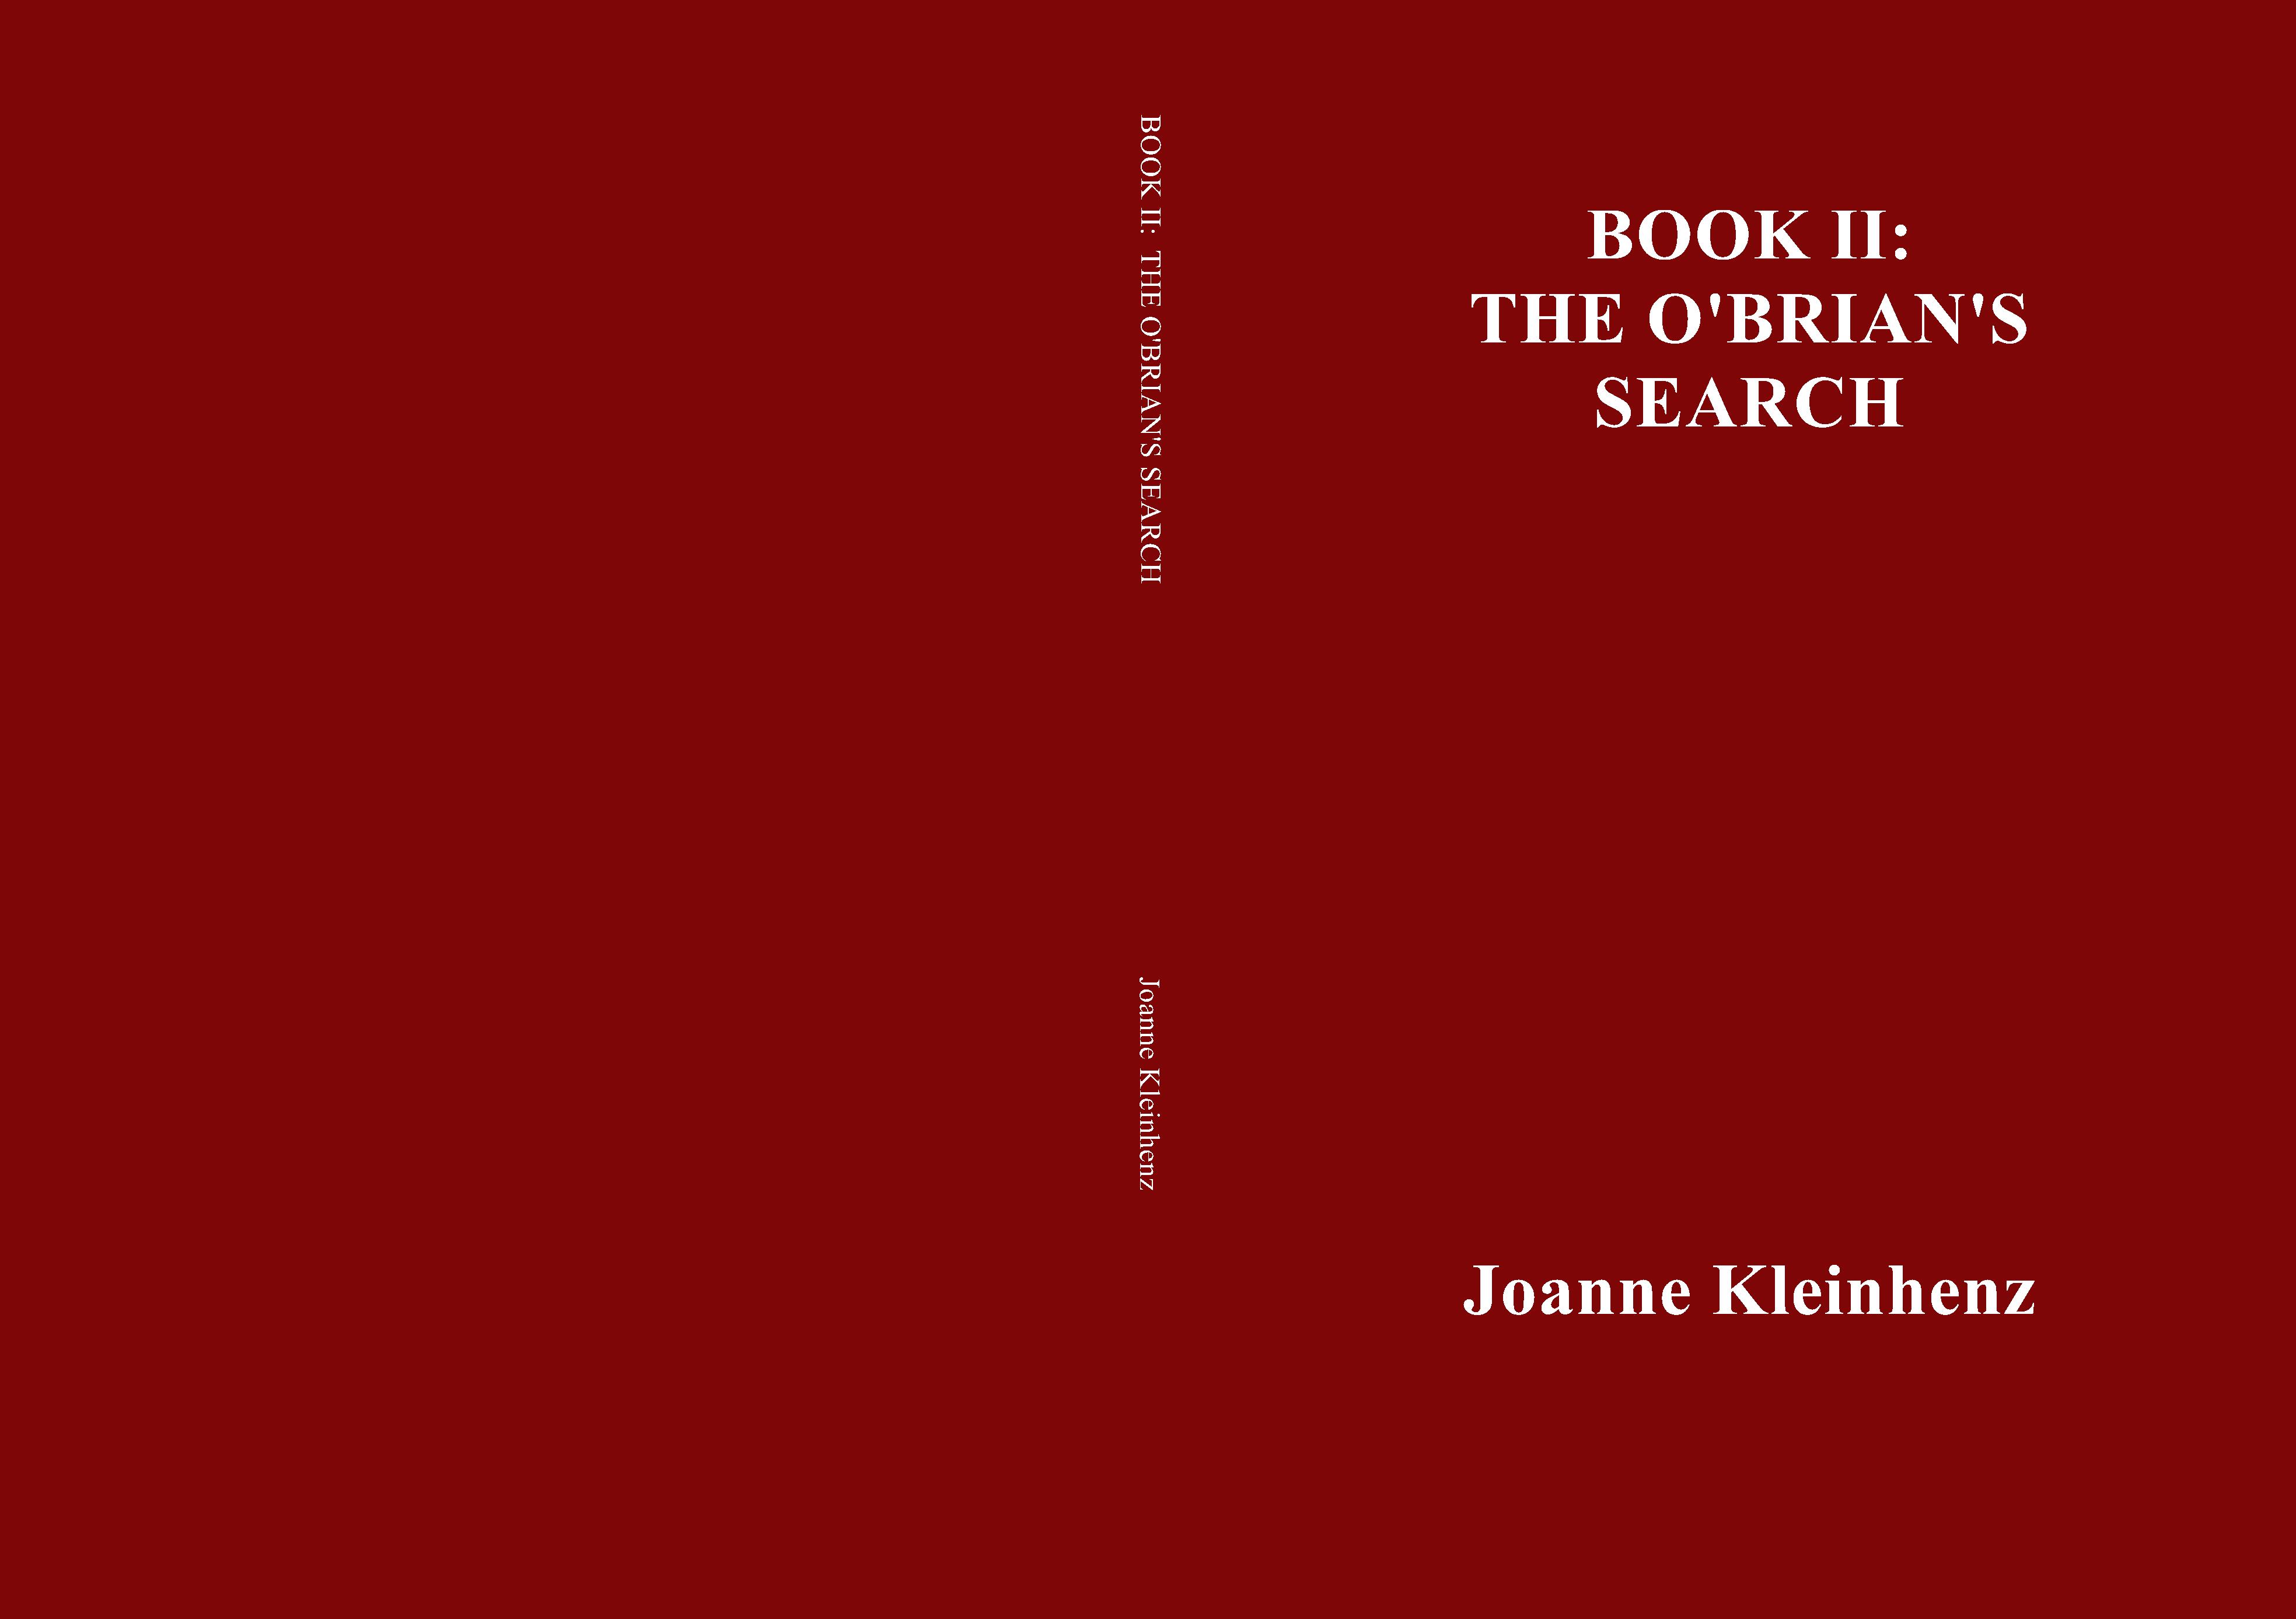 BOOK II: THE O